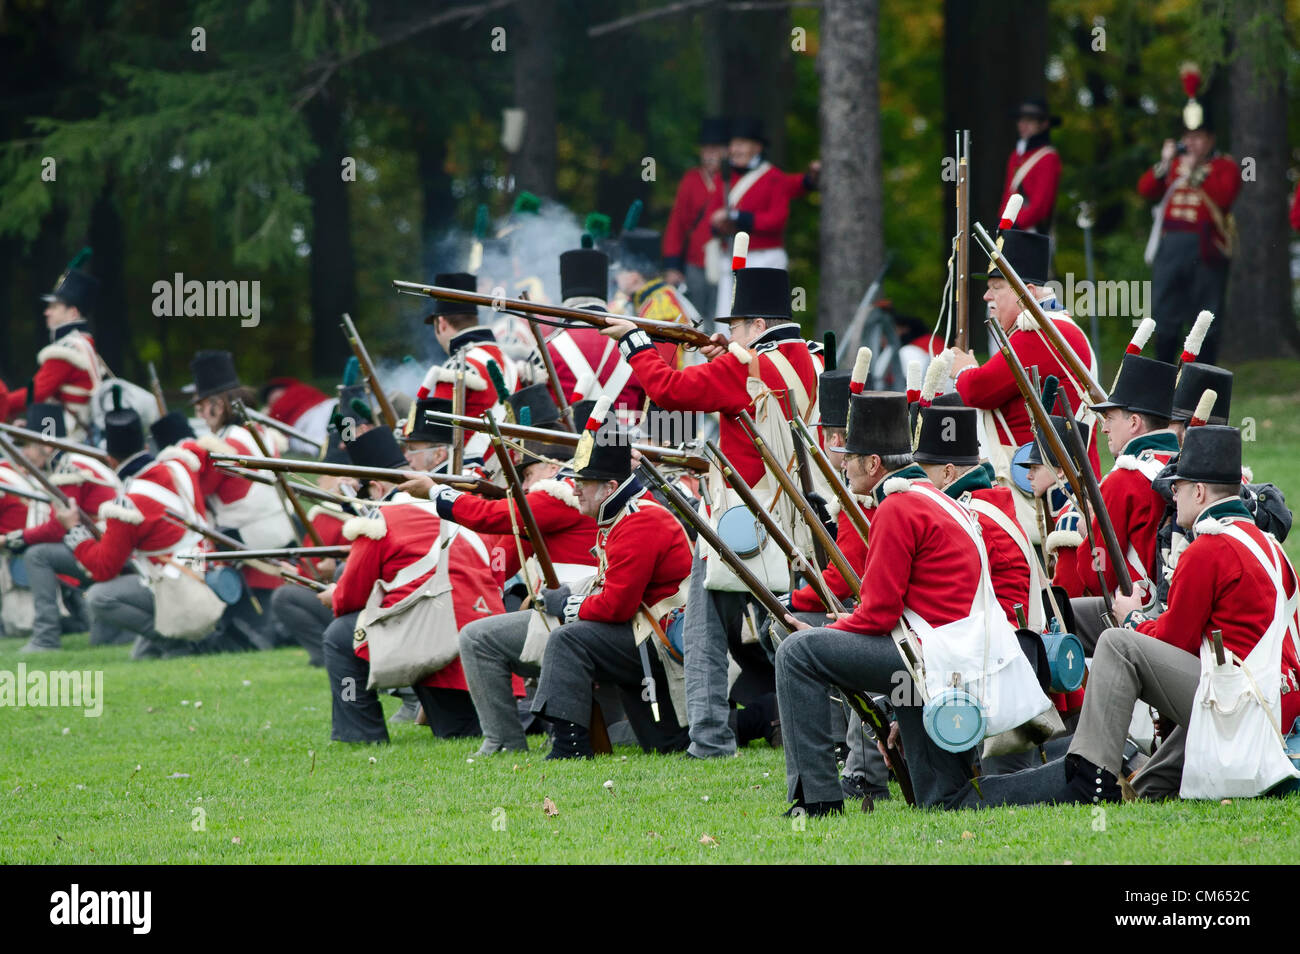 Feu d'infanterie britannique sur l'approche de soldats américains samedi Octobre 13/2012 lors d'un 200e re nous avons passé une reconstitution de la bataille de Queenston Heights, une guerre de 1812, bataille de Queenston (Ontario), Canada. Photo par J.T. Lewis Banque D'Images